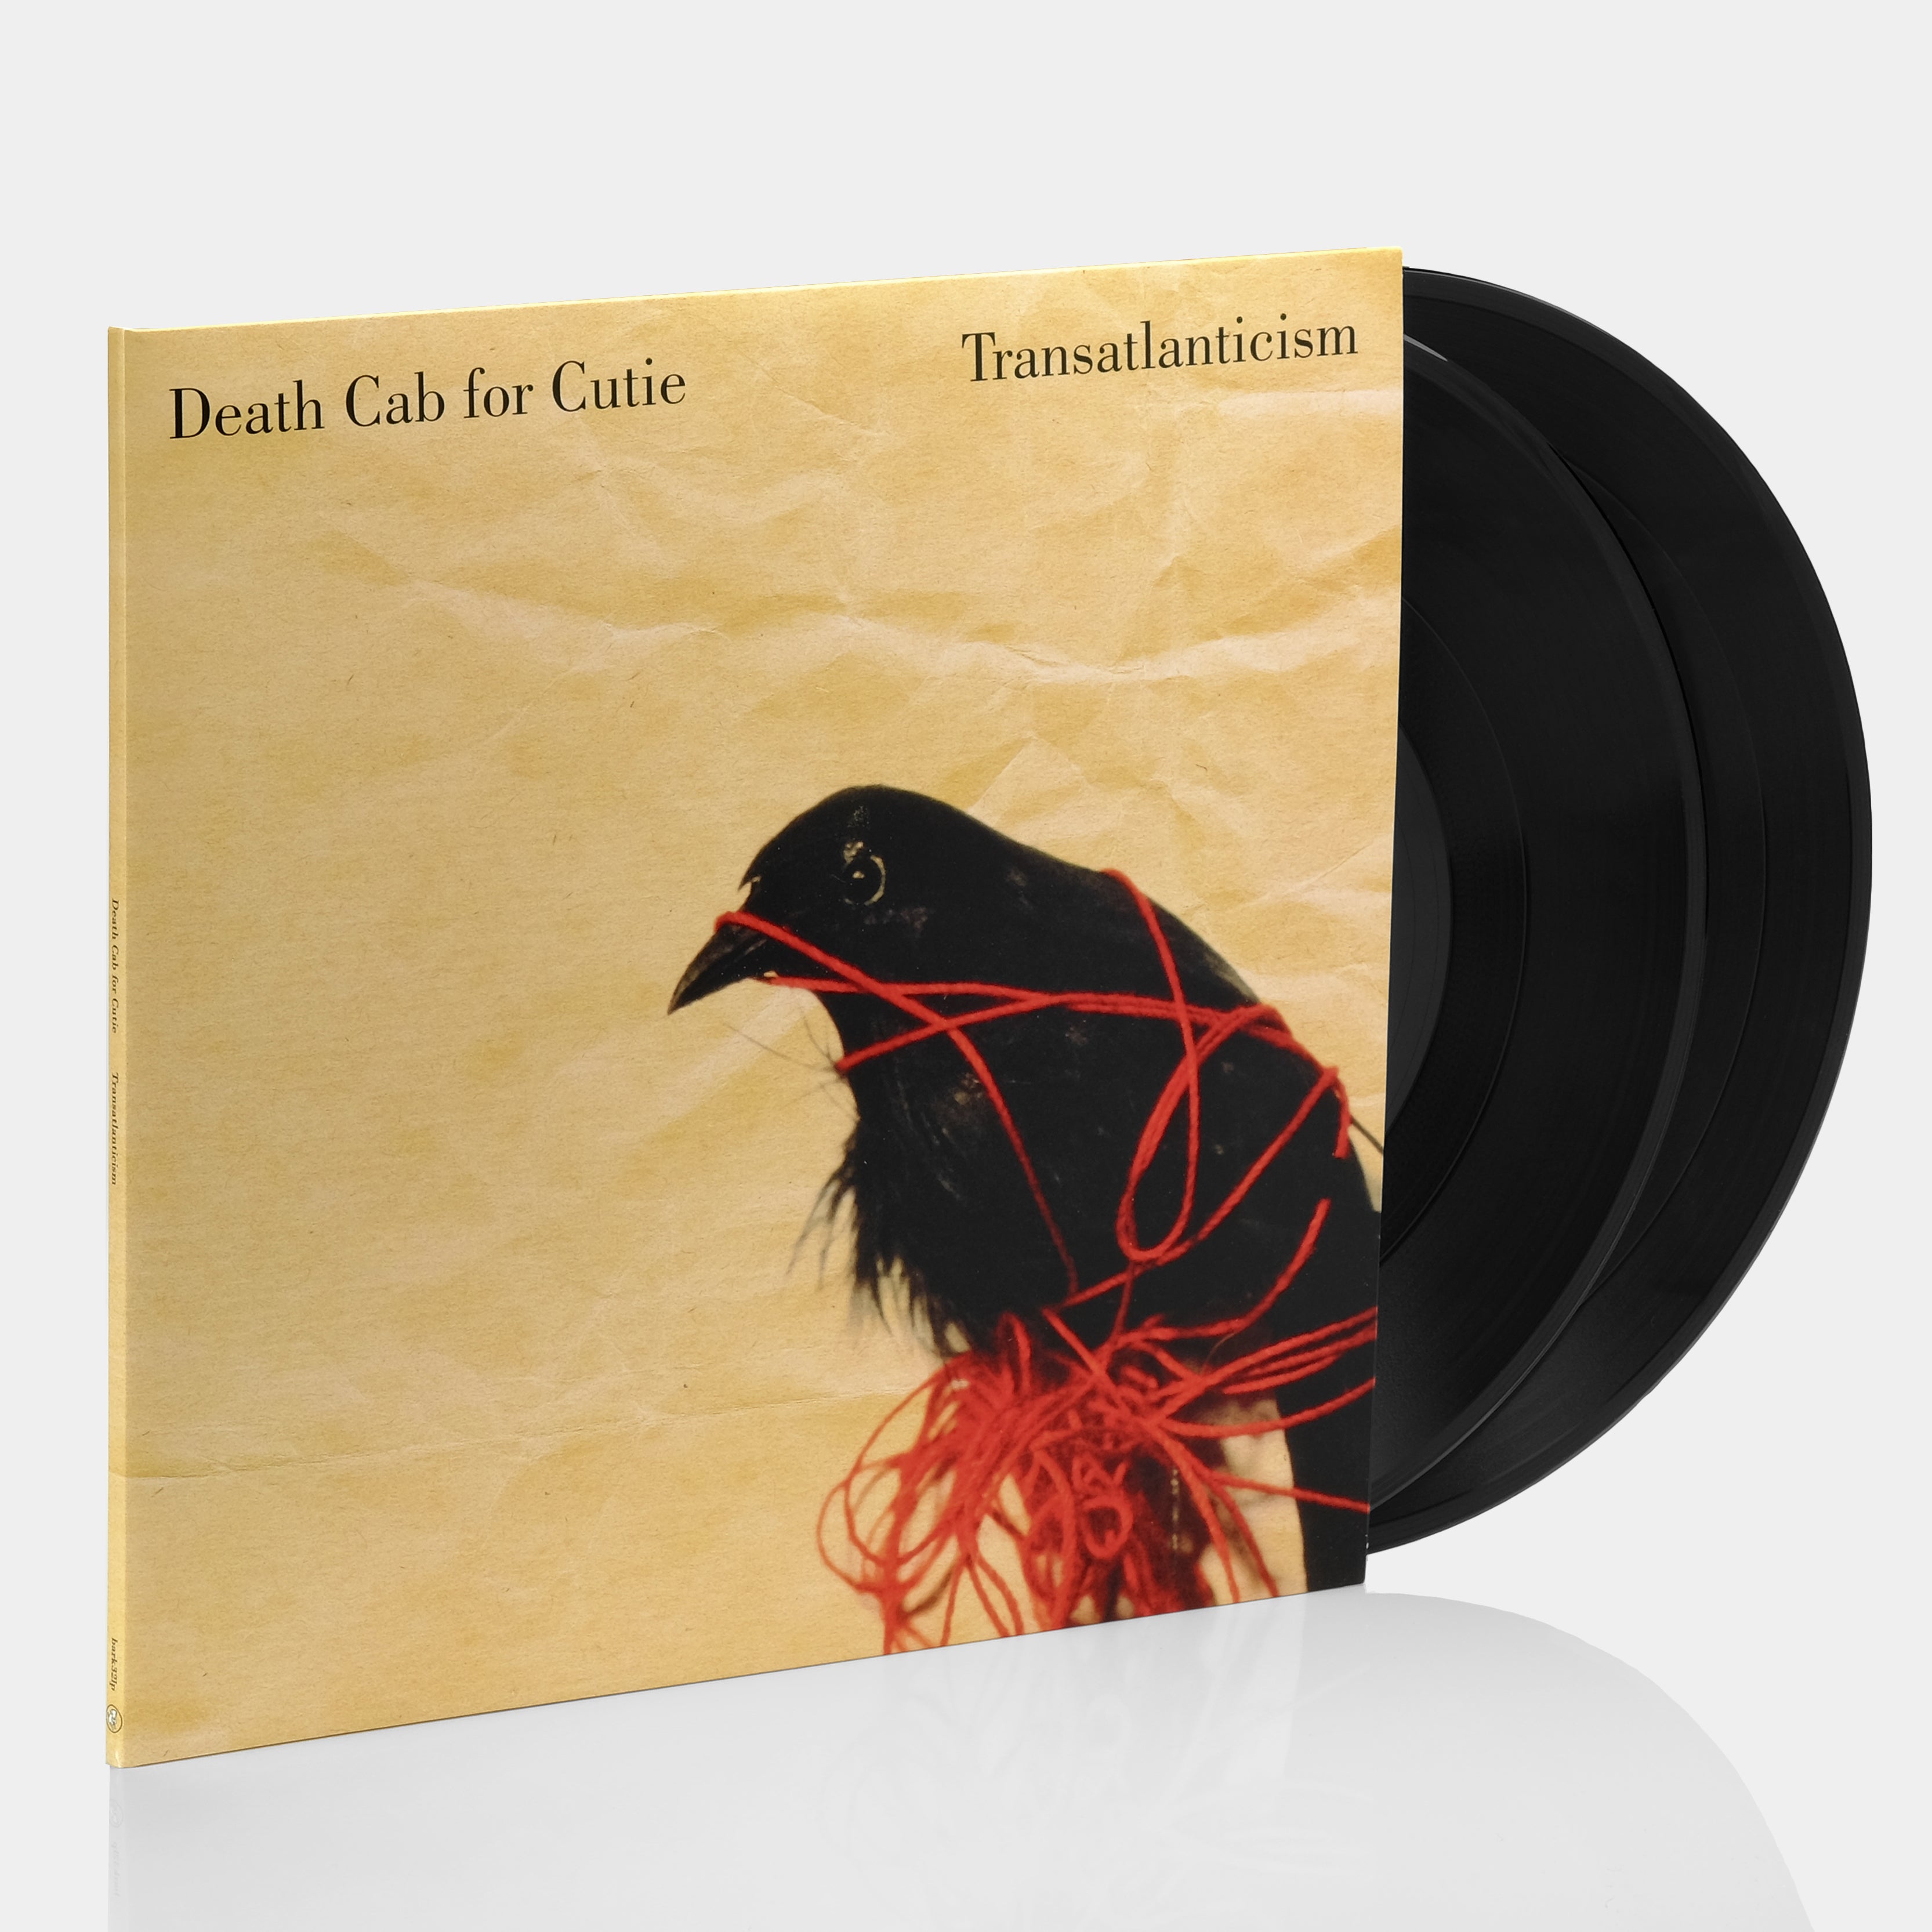 Death Cab for Cutie - Transatlanticism (10th Anniversary Edition) 2xLP  Vinyl Record